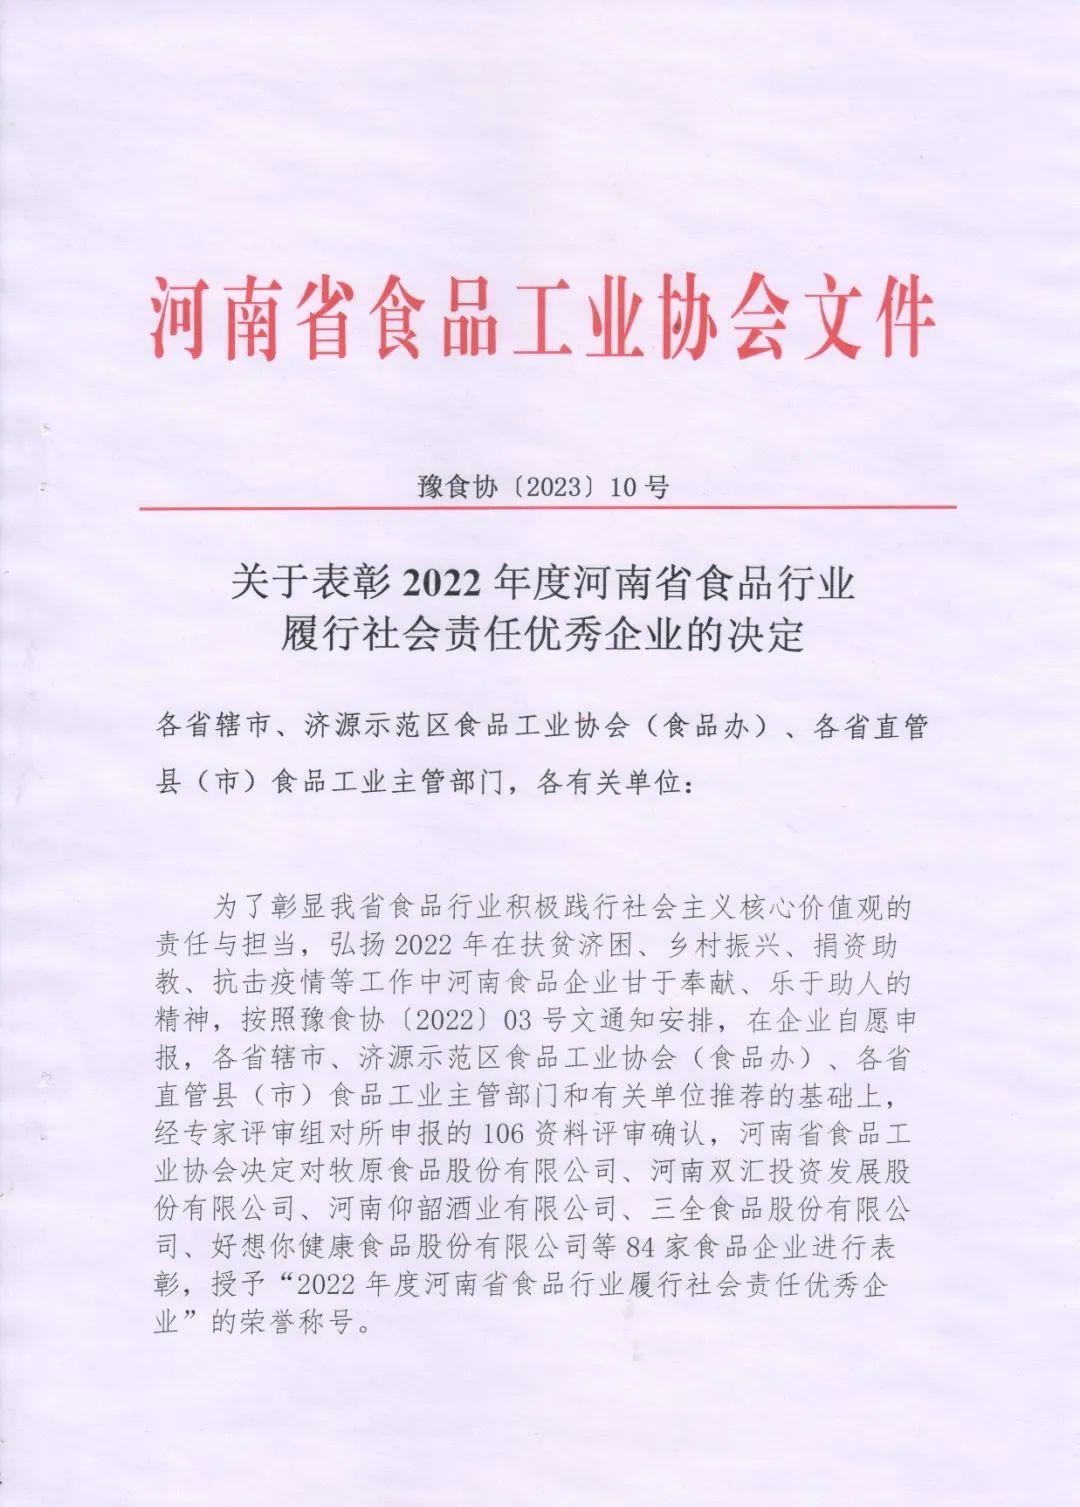 熱烈慶祝貴友集團、福潤公司被河南省食品工業協會授予““2022年度河南省食品行業履行社會責任優秀企業”榮譽稱號 